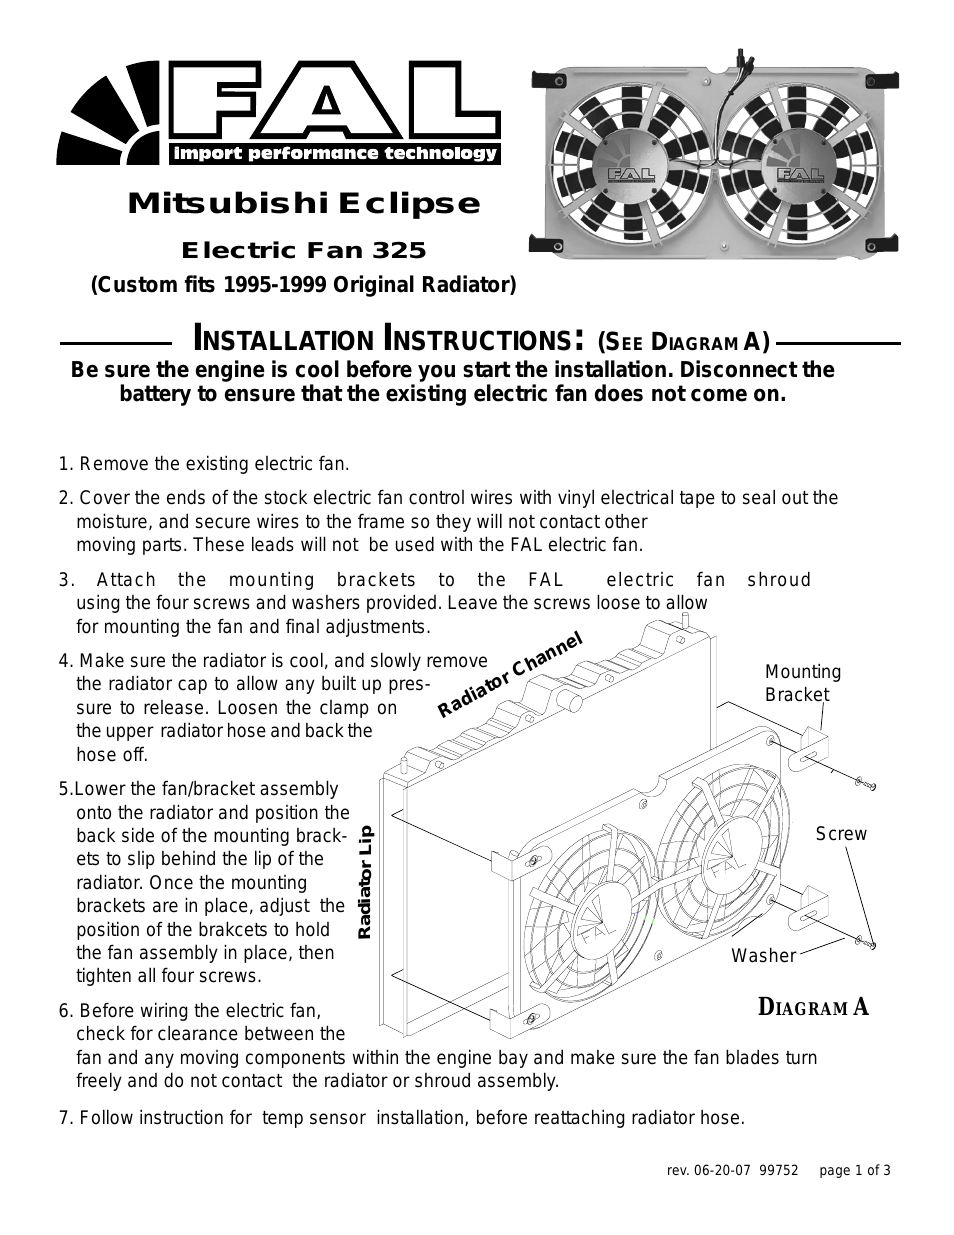 325 Mitsubishi Eclipse Electric Fan